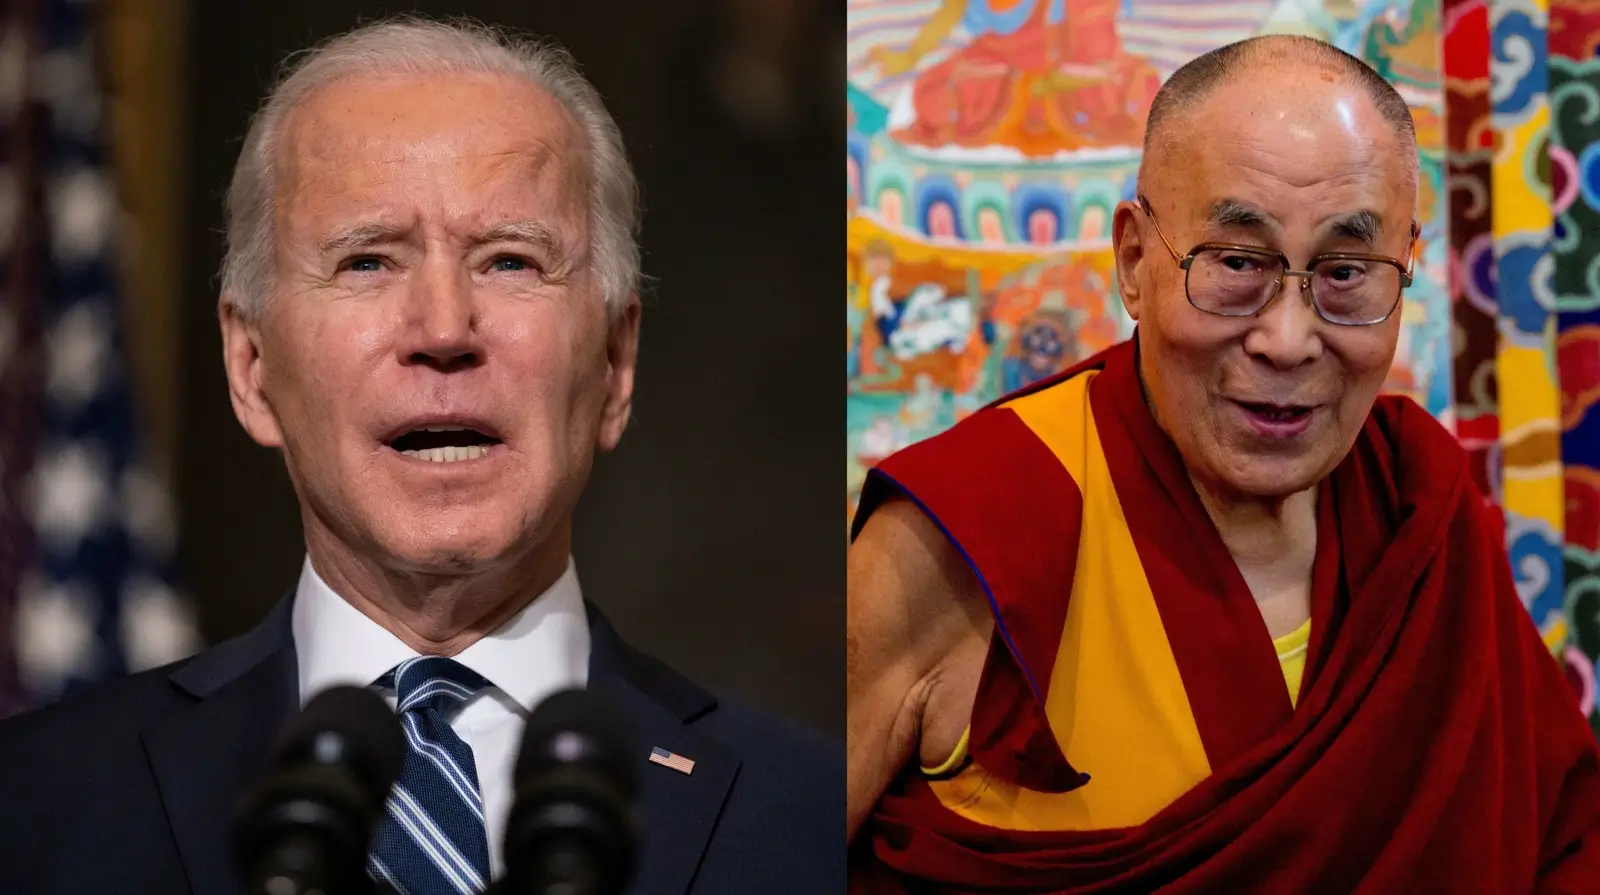 US Congress members urge for meeting between Biden, Dalai Lama